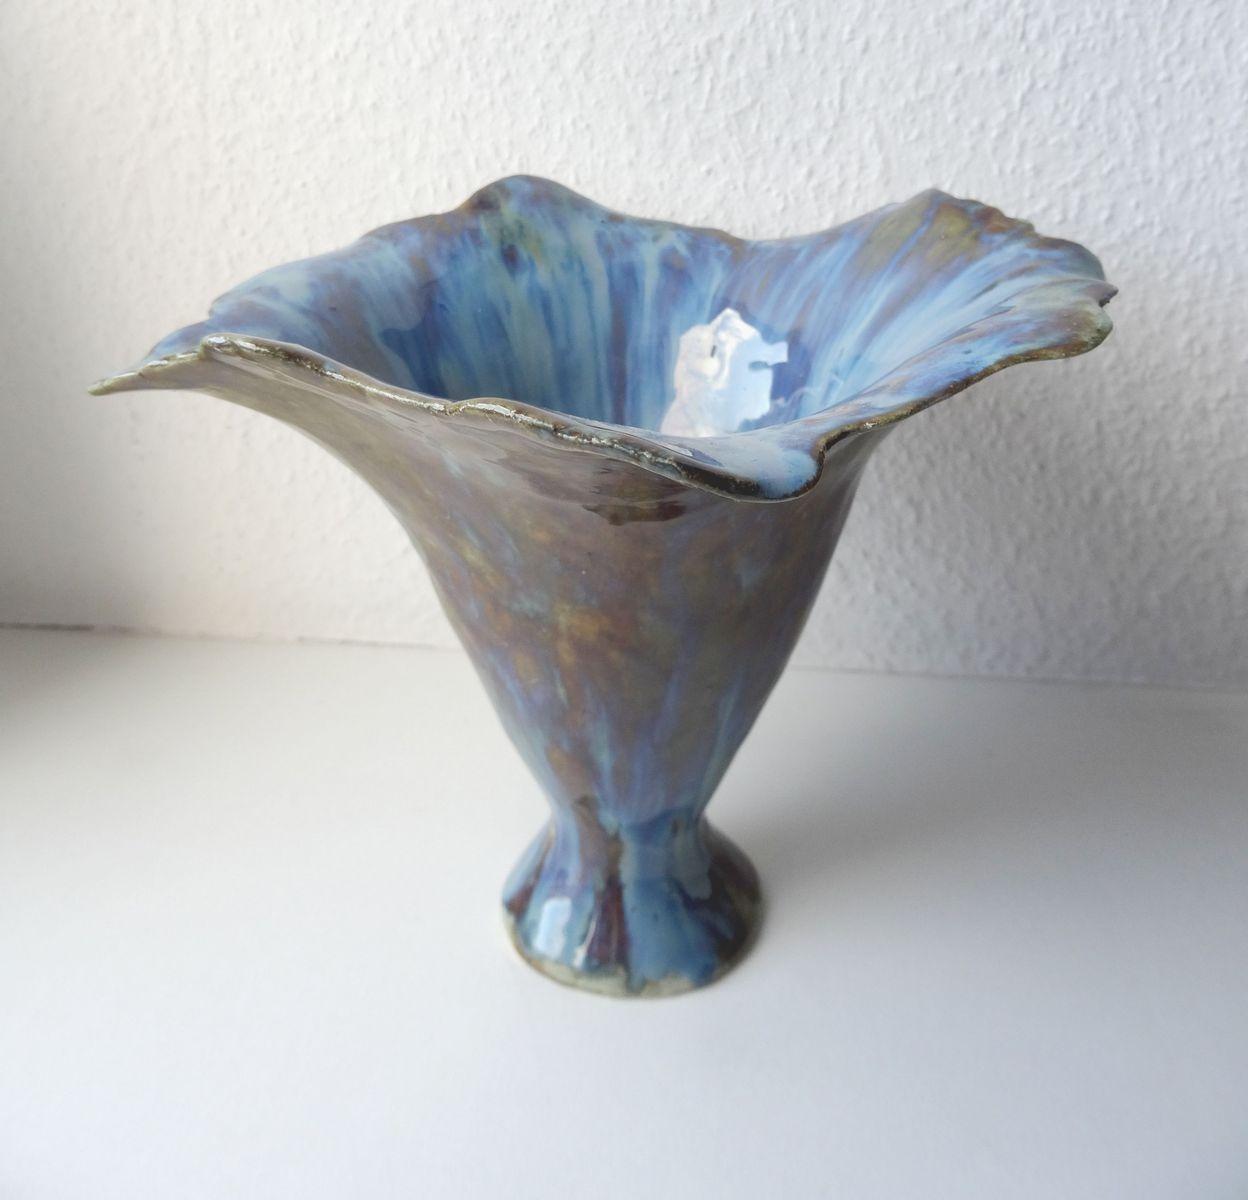 Blaue Blume aus der Vase. 2017. Massivsteinstein, H 17,5 cm, Durchmesser 21,5 cm